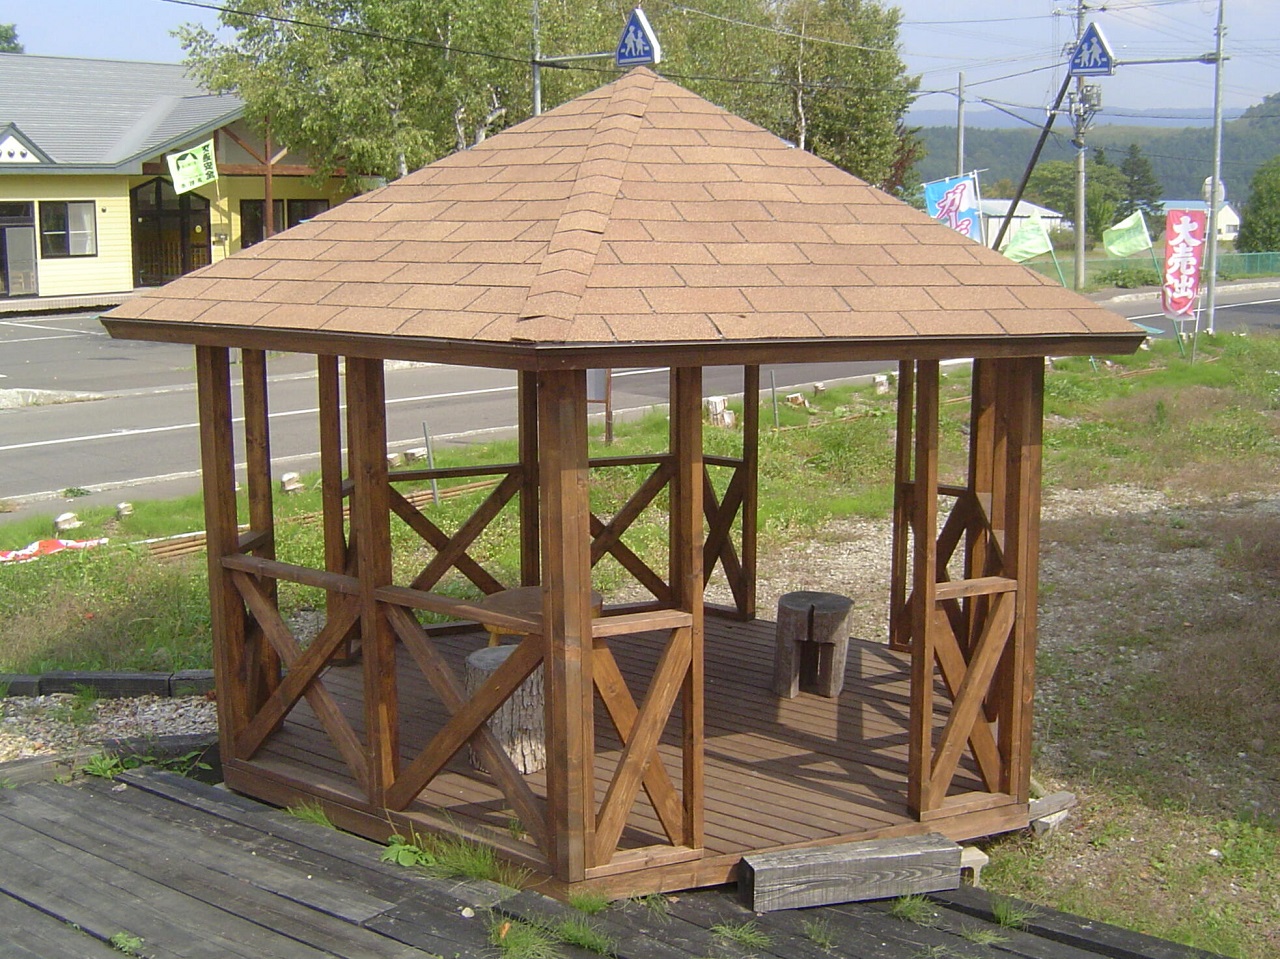 ガゼボとは、よく公園などで見かける屋根だけ付いた休憩スペースです。